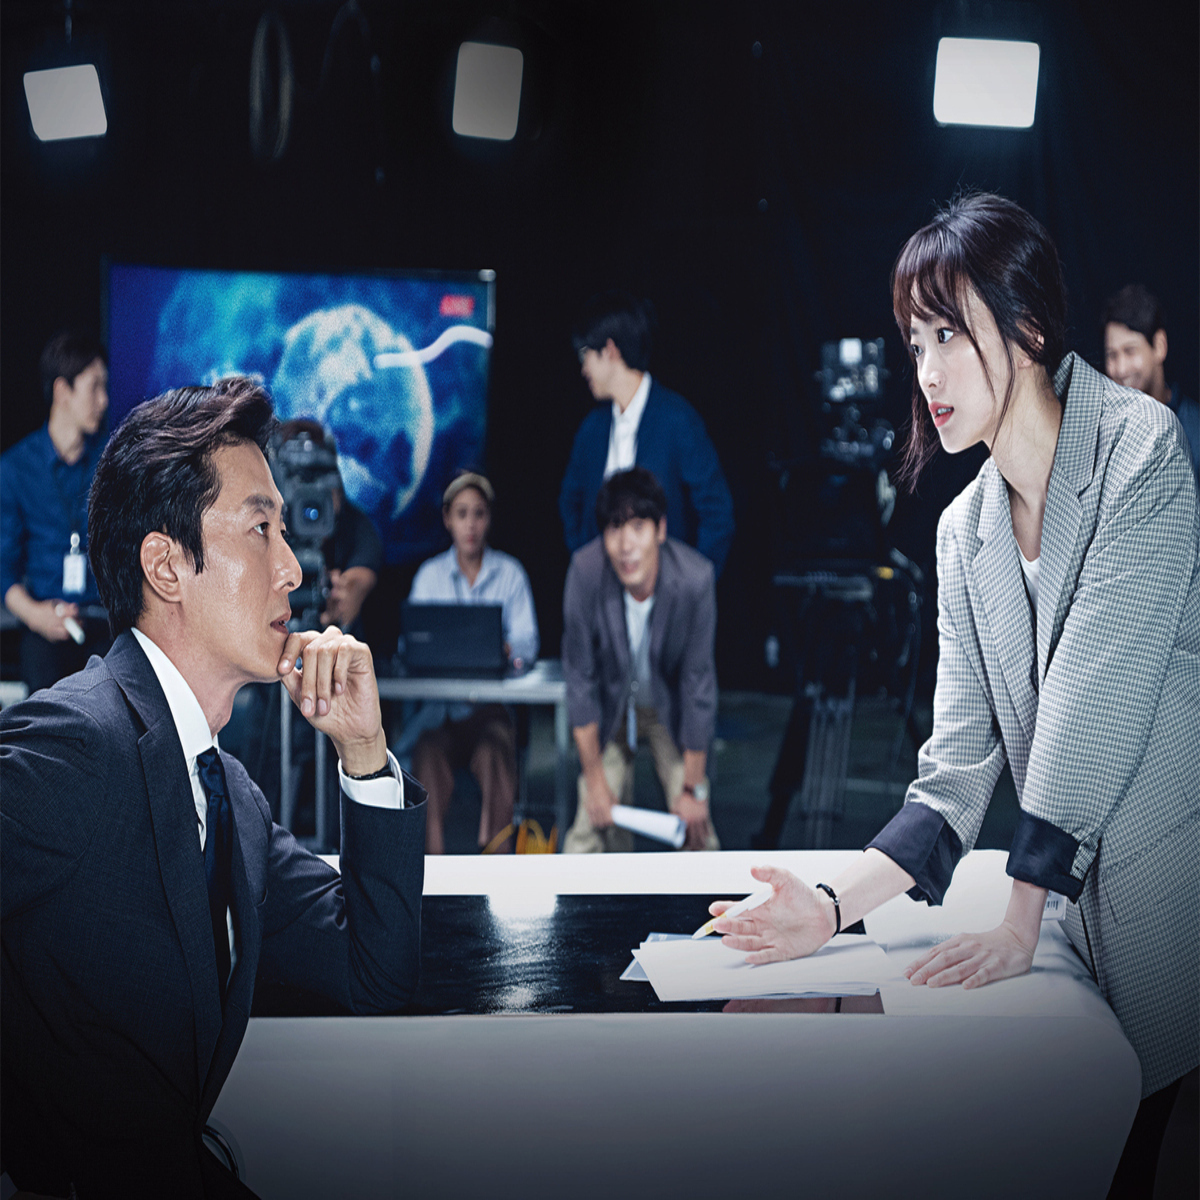 キム ジュヒョク チョン ウヒ出演 ドラマ アルゴン 隠された真実 衛星劇場にて8月31日より日本初放送が決定 Kstyle